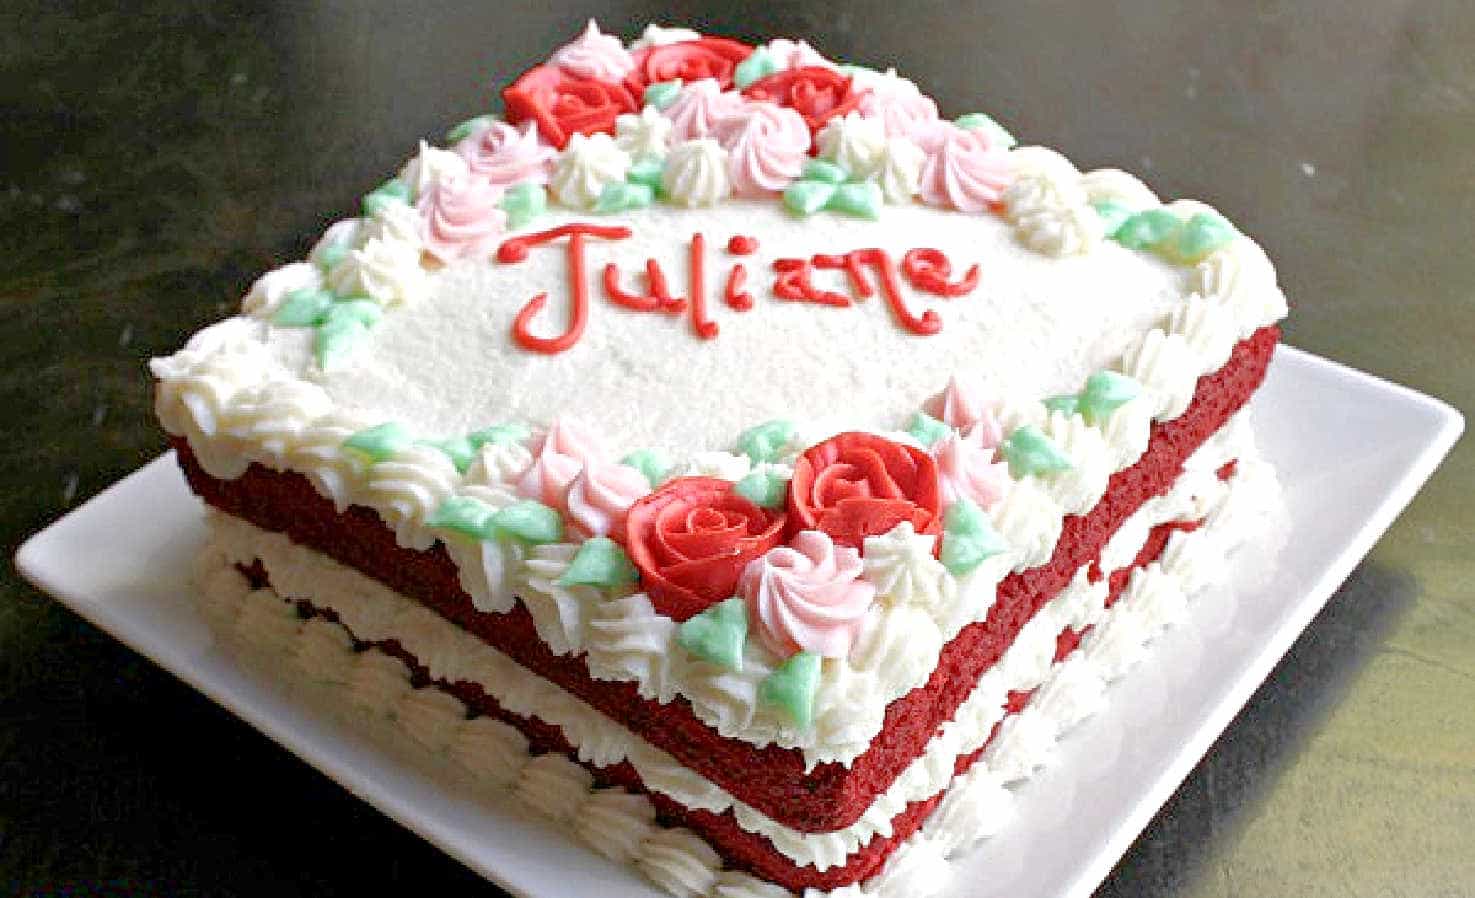 A red velvet cake on a white plate.